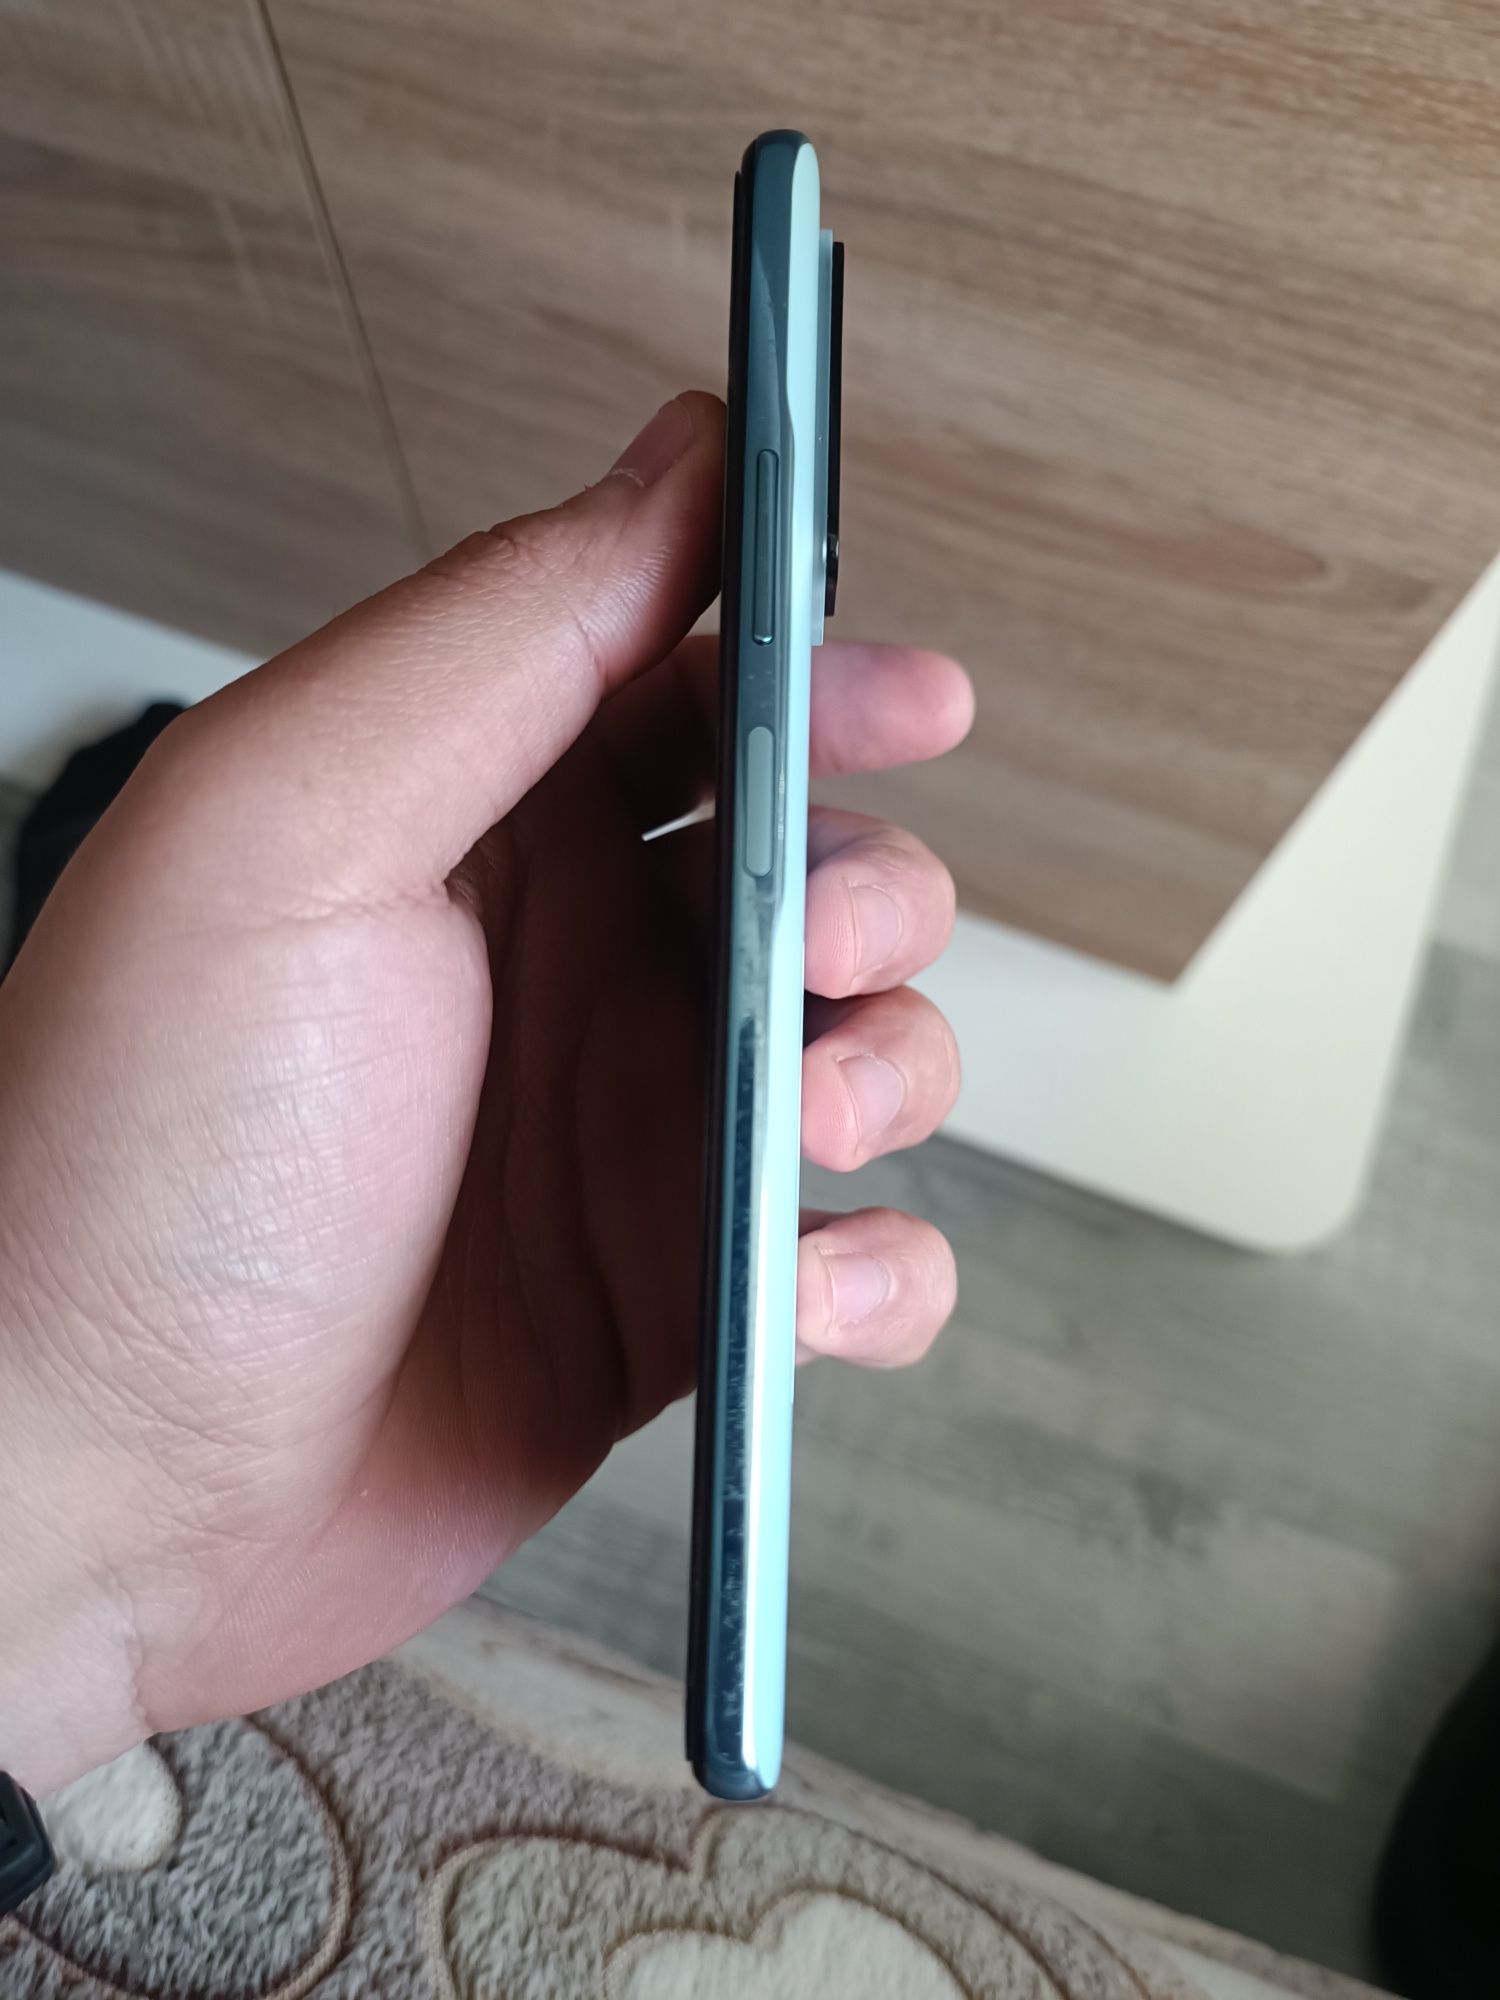 Xiaomi note 10 pro 128/8 gb 108mp